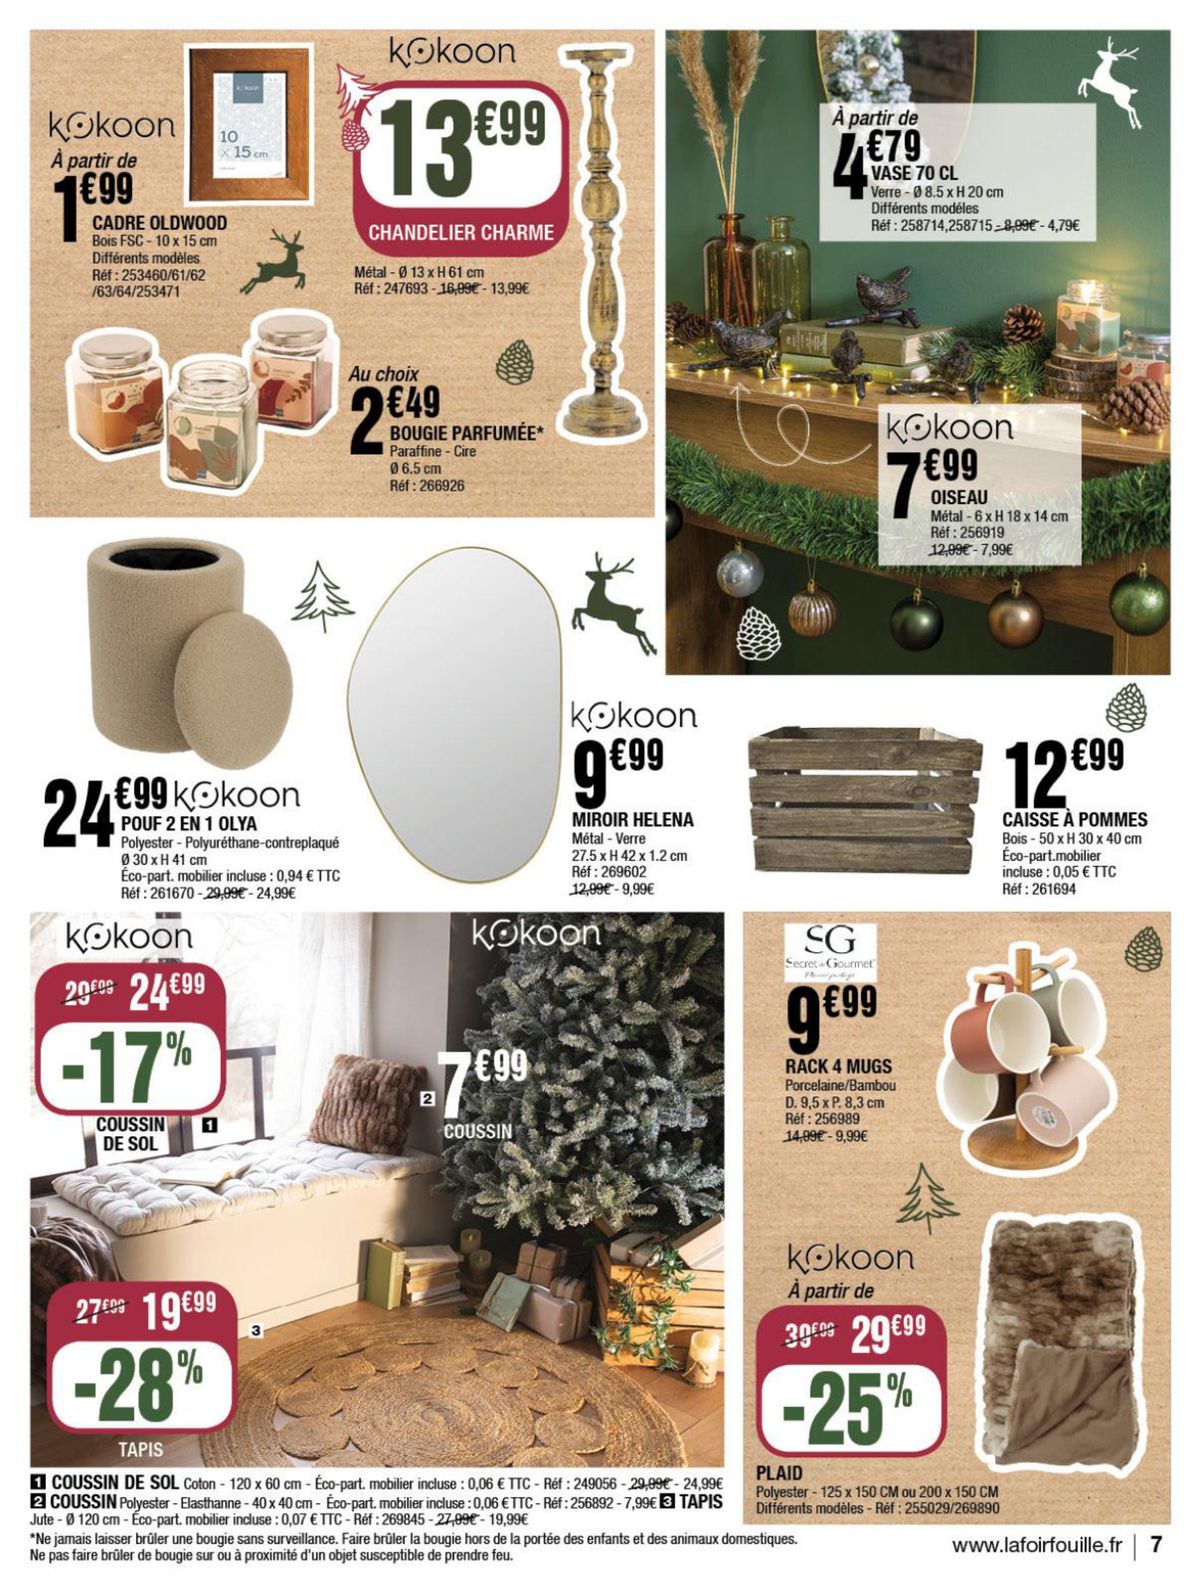 Catalogue Mes idées cadeaux pour briller à Noël, page 00007